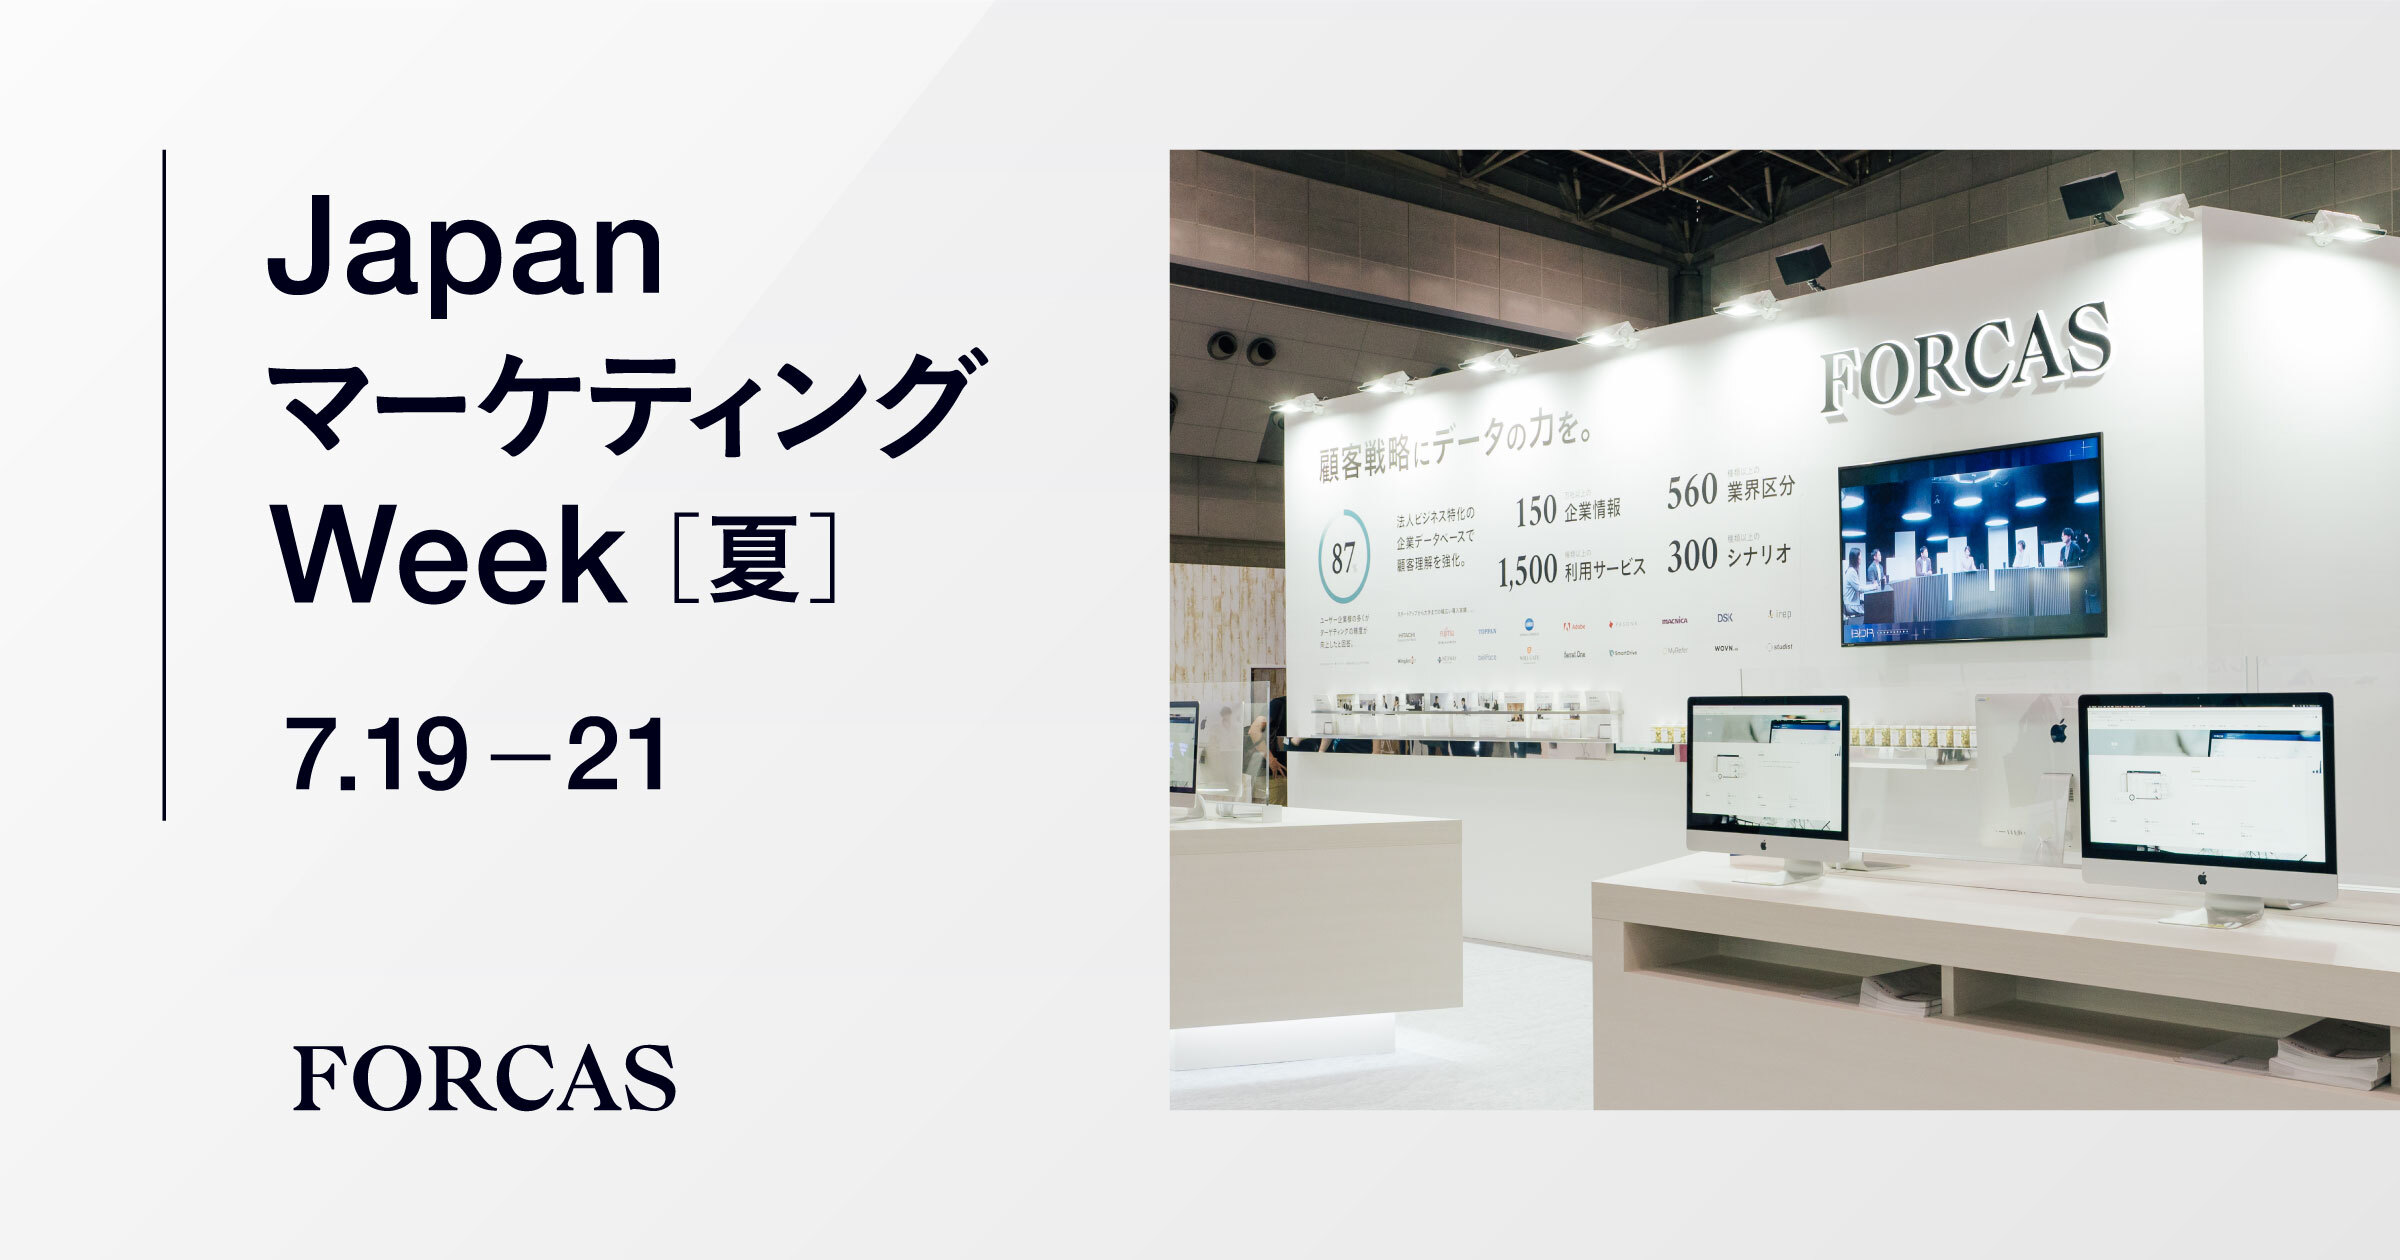 FORCASは『オフライン展示会 Japan マーケティング Week 夏』（7/19-21、東京ビッグサイト/東ホール）に出展します